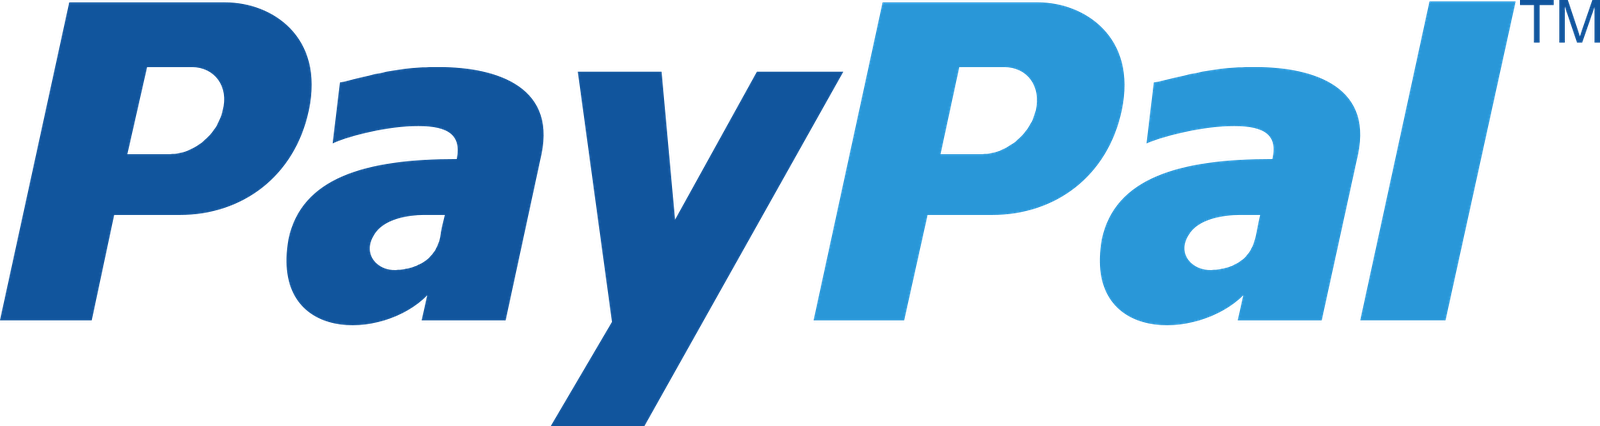 paypal logo png #2140